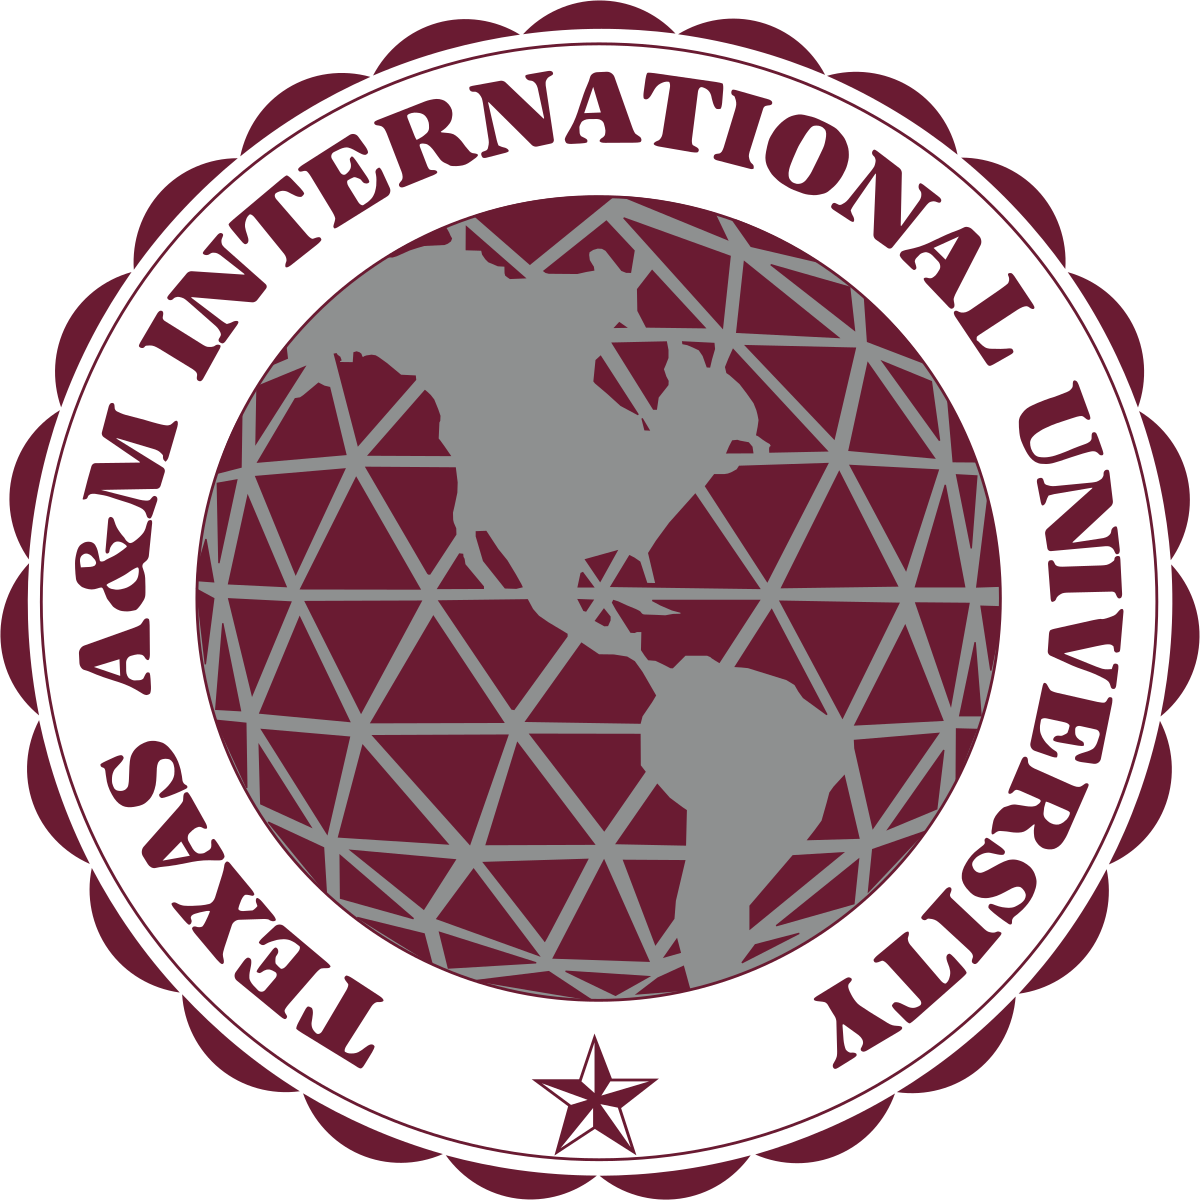 Техасский университет a&m. Международные университет логотип. М International. Texas a&m University logo. М интернационал